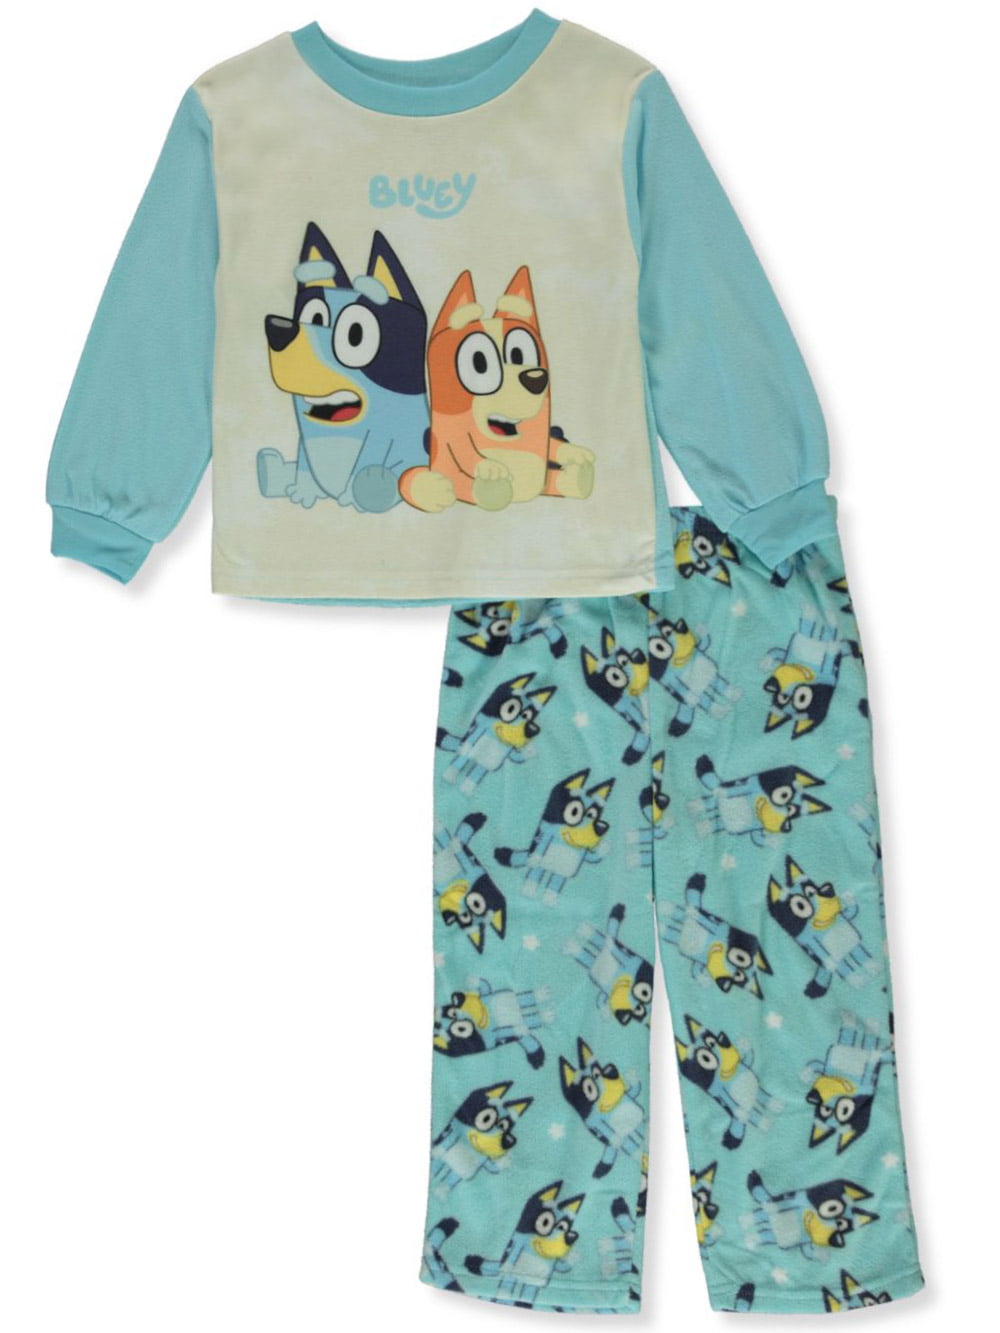 Juego de pijamas de 2 piezas Bluey Boys - bluemulti, 4t Toddler